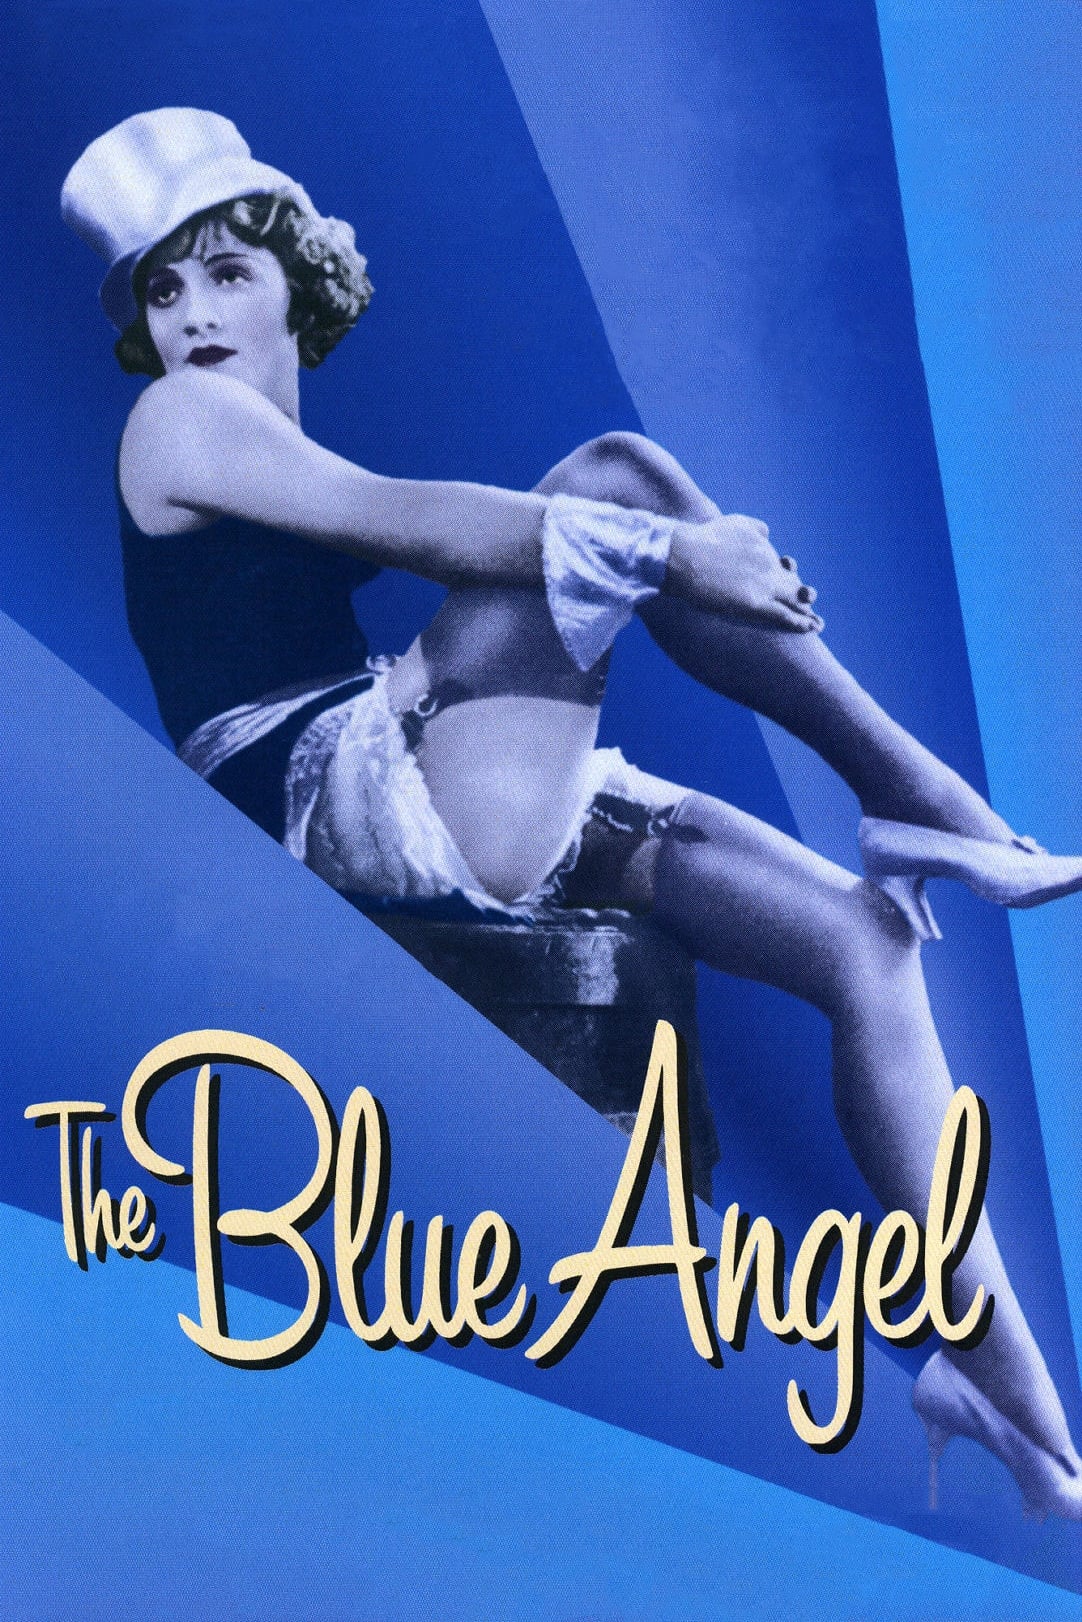 El ángel azul (1930)